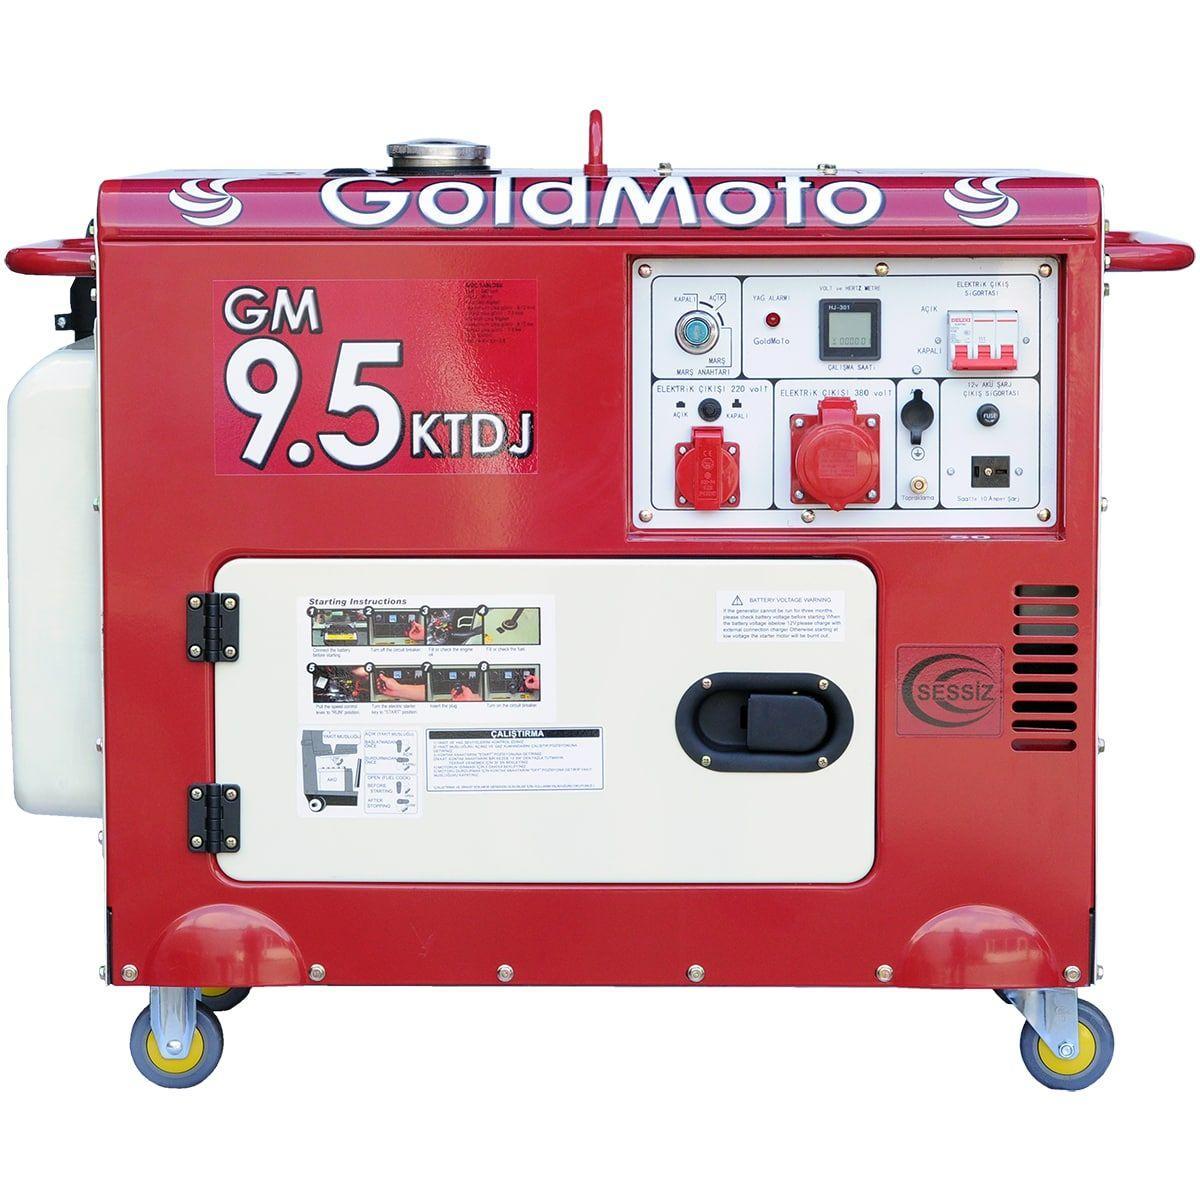 Генератор GoldMoto GM9.5KTDJ